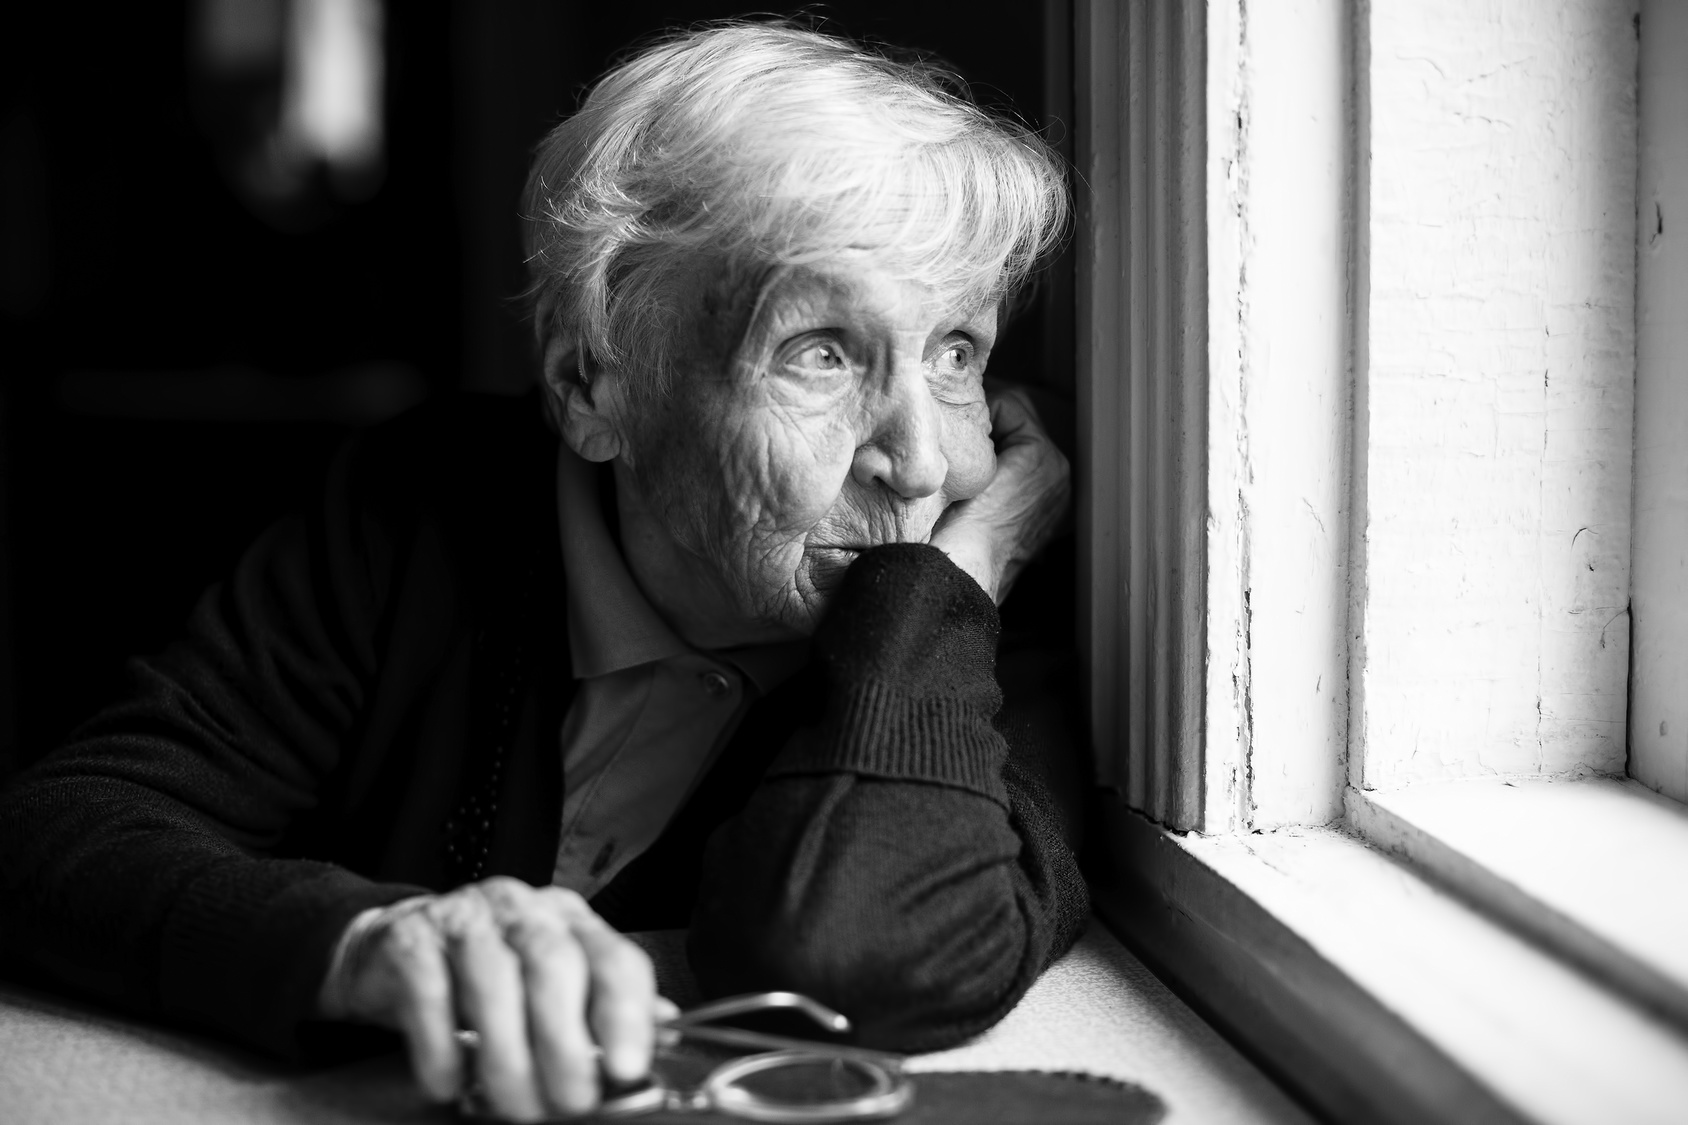 La soledad en los mayores                                                                                                                                                                                                                                  